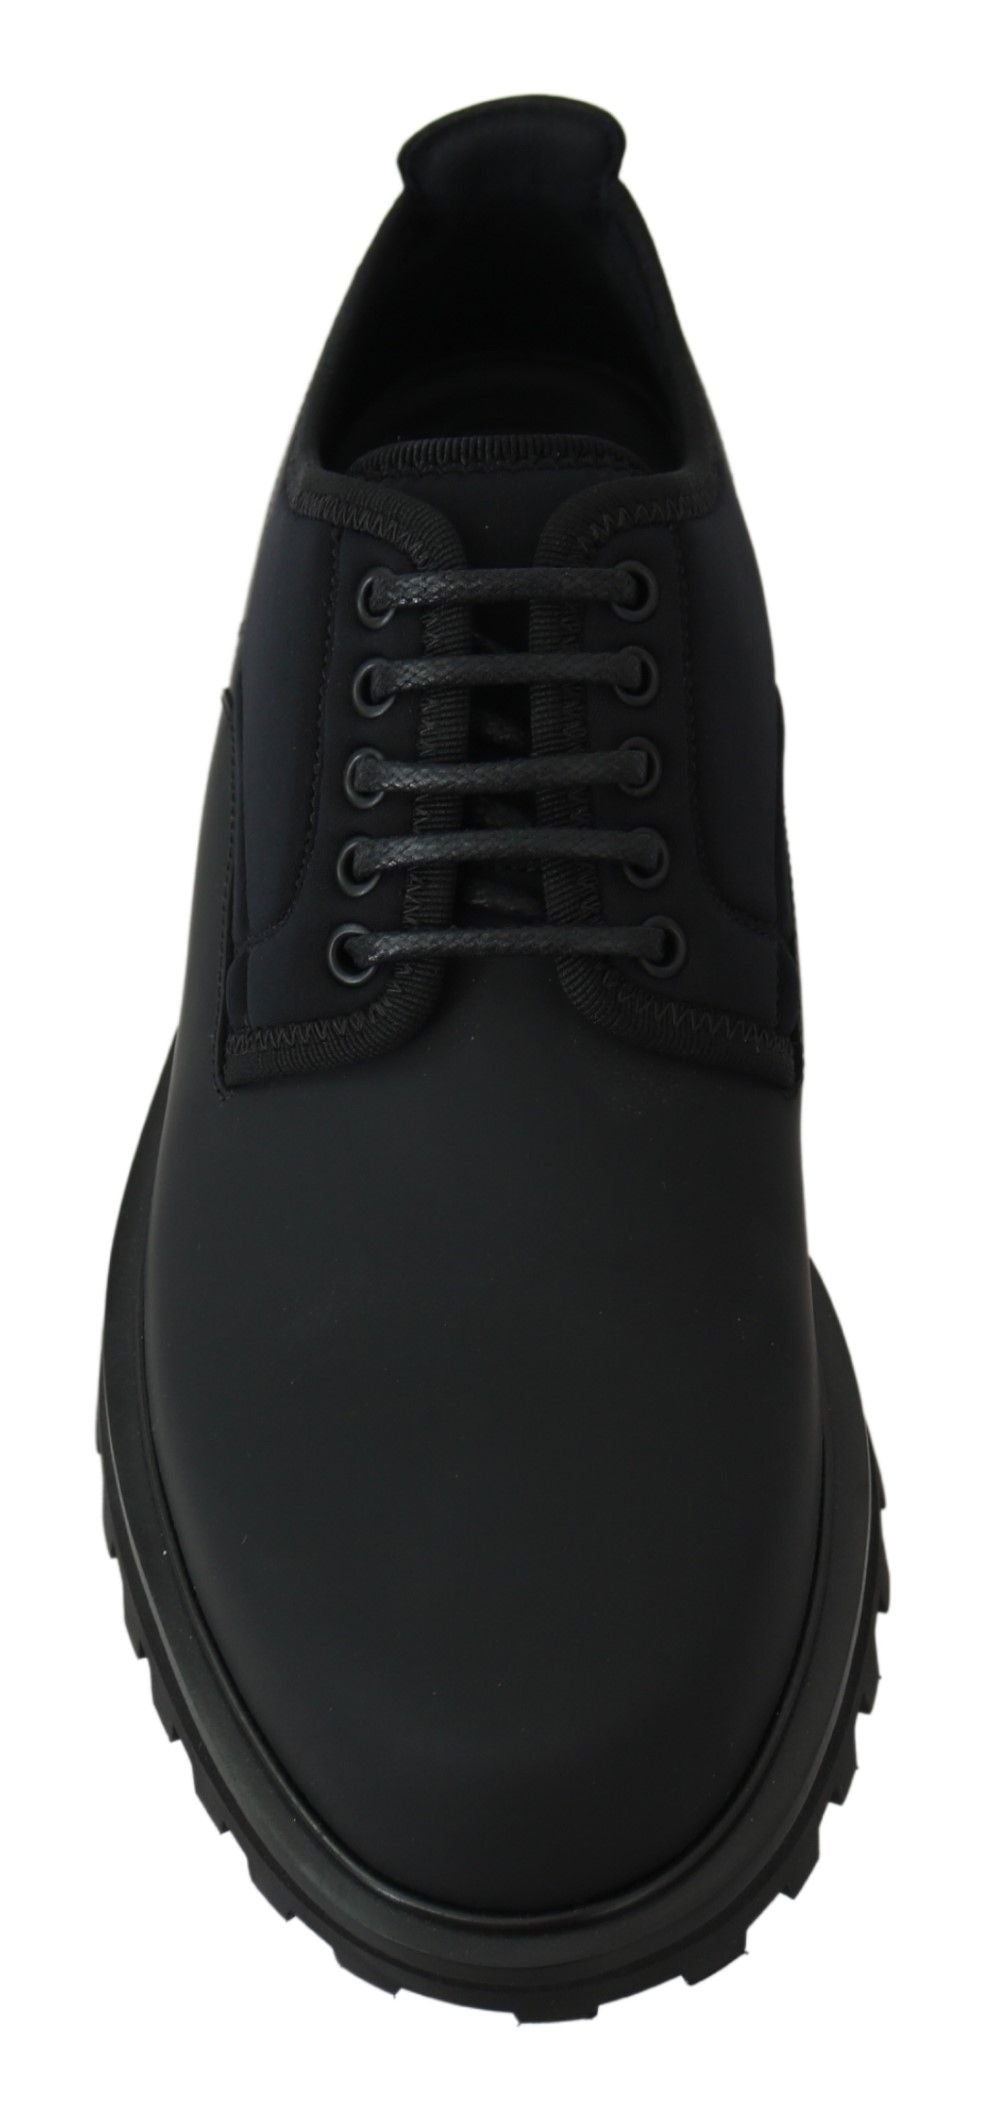 Elegant Black Calfskin Derby Shoes